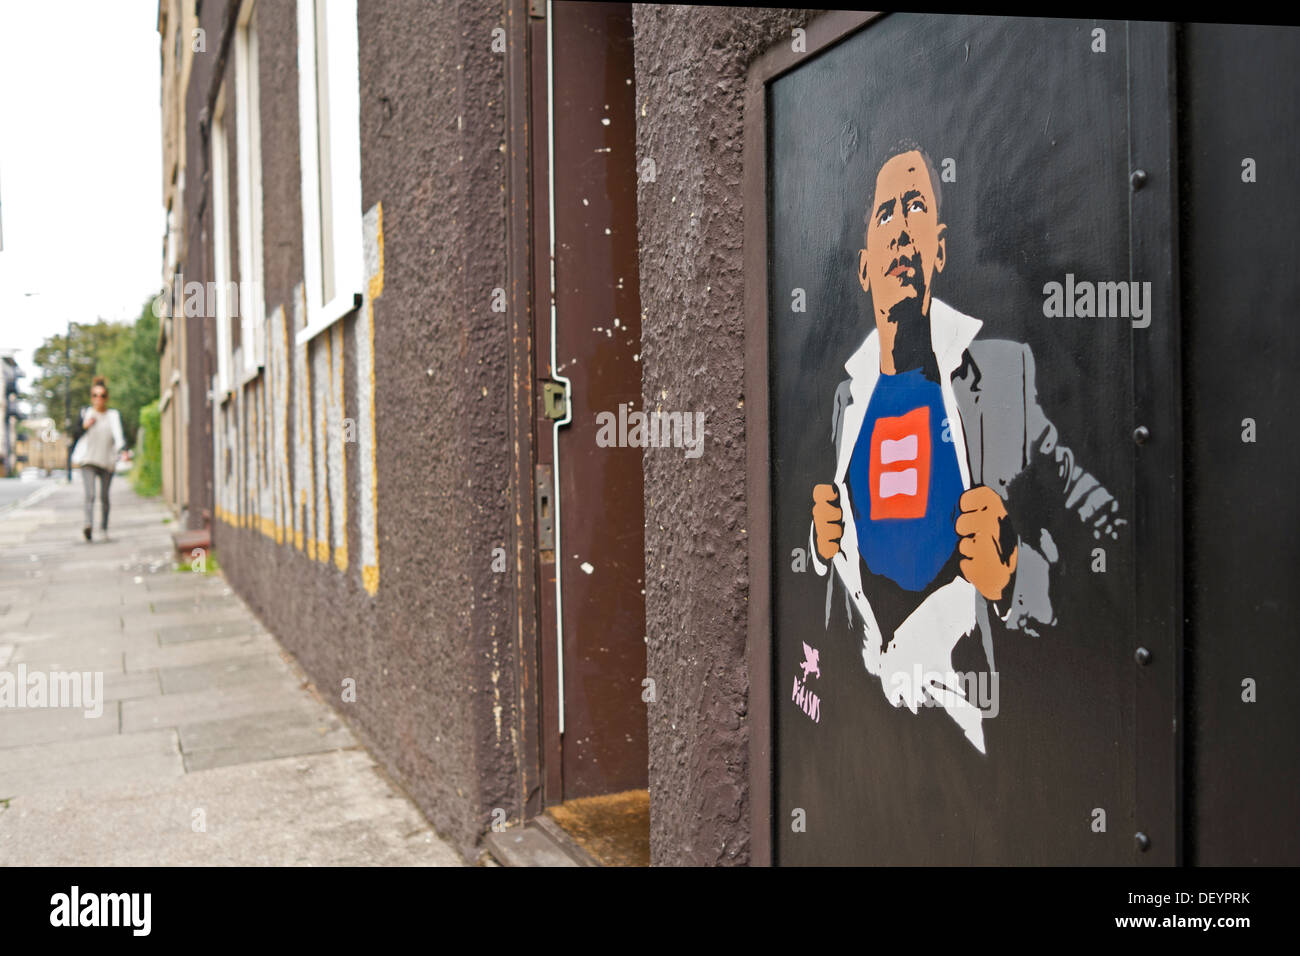 Une fille s'approche d'une rue à la distance. Un graffiti au pochoir de droit du président Barack Obama a été peint sur le mur. Banque D'Images